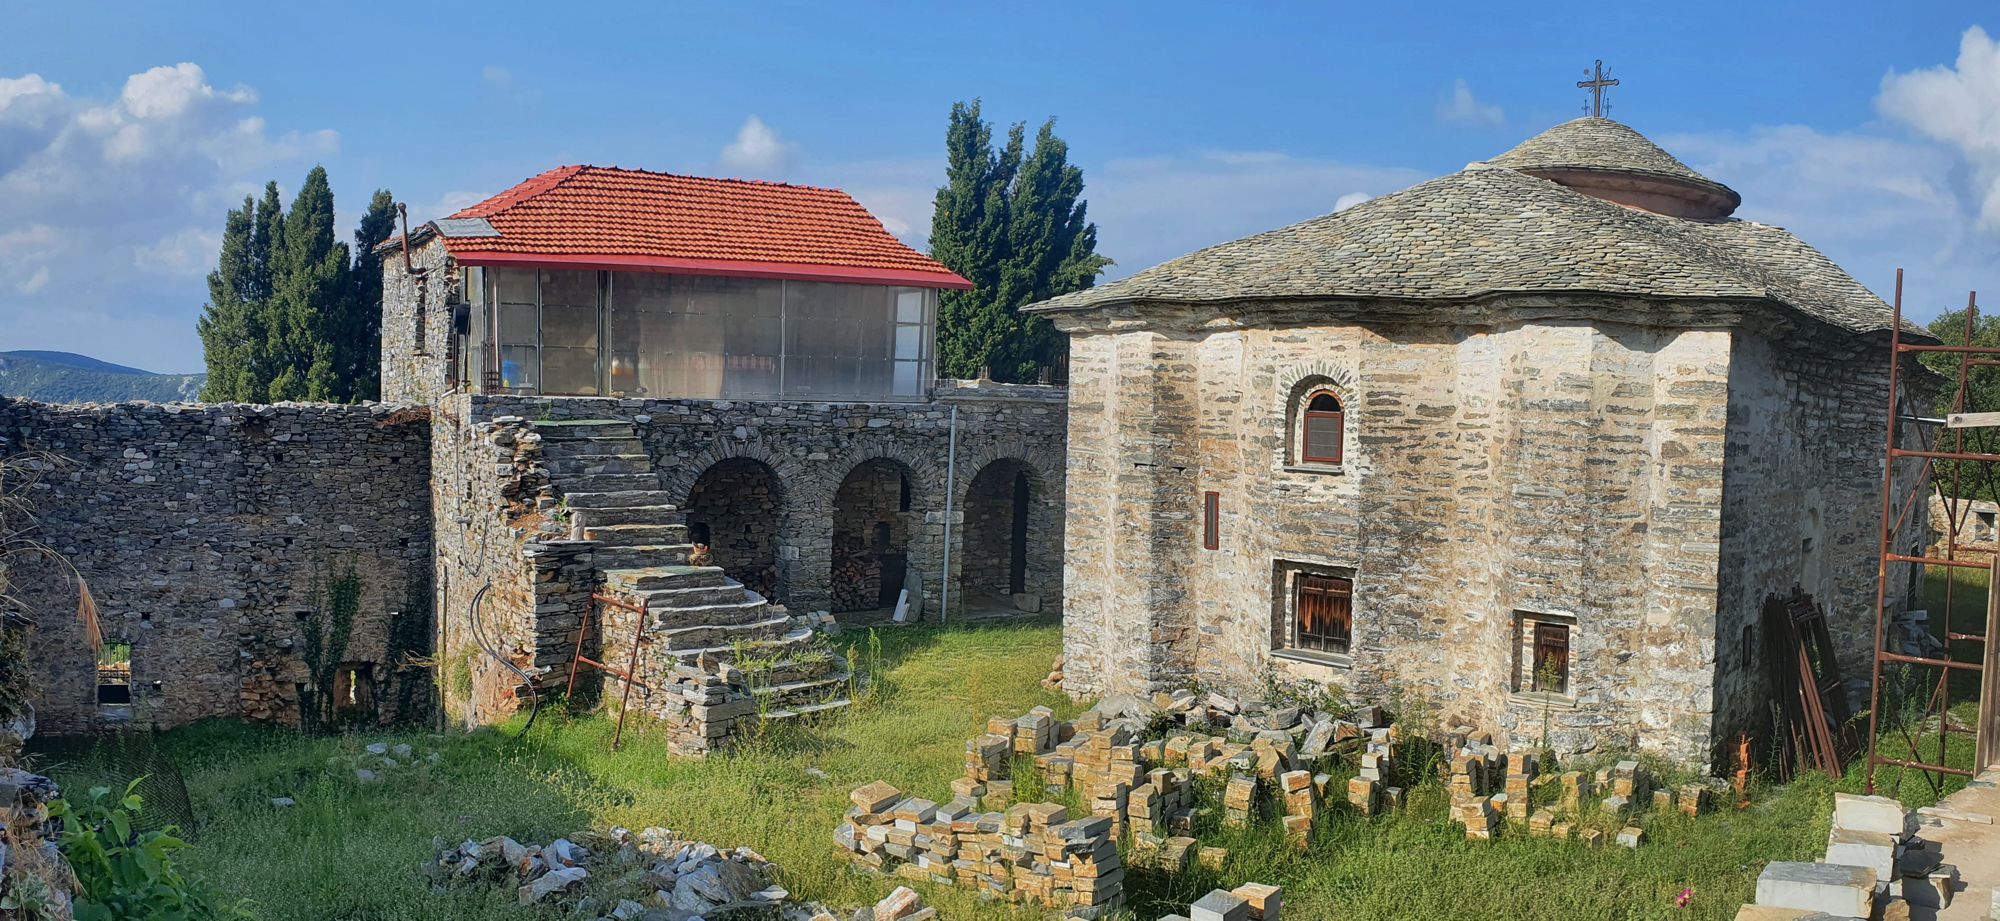 Τα μοναστήρια του Πηλίου: Το καθολικό και τα κύρια βοηθητικά κτίσματα της μονής Σουρβιάς